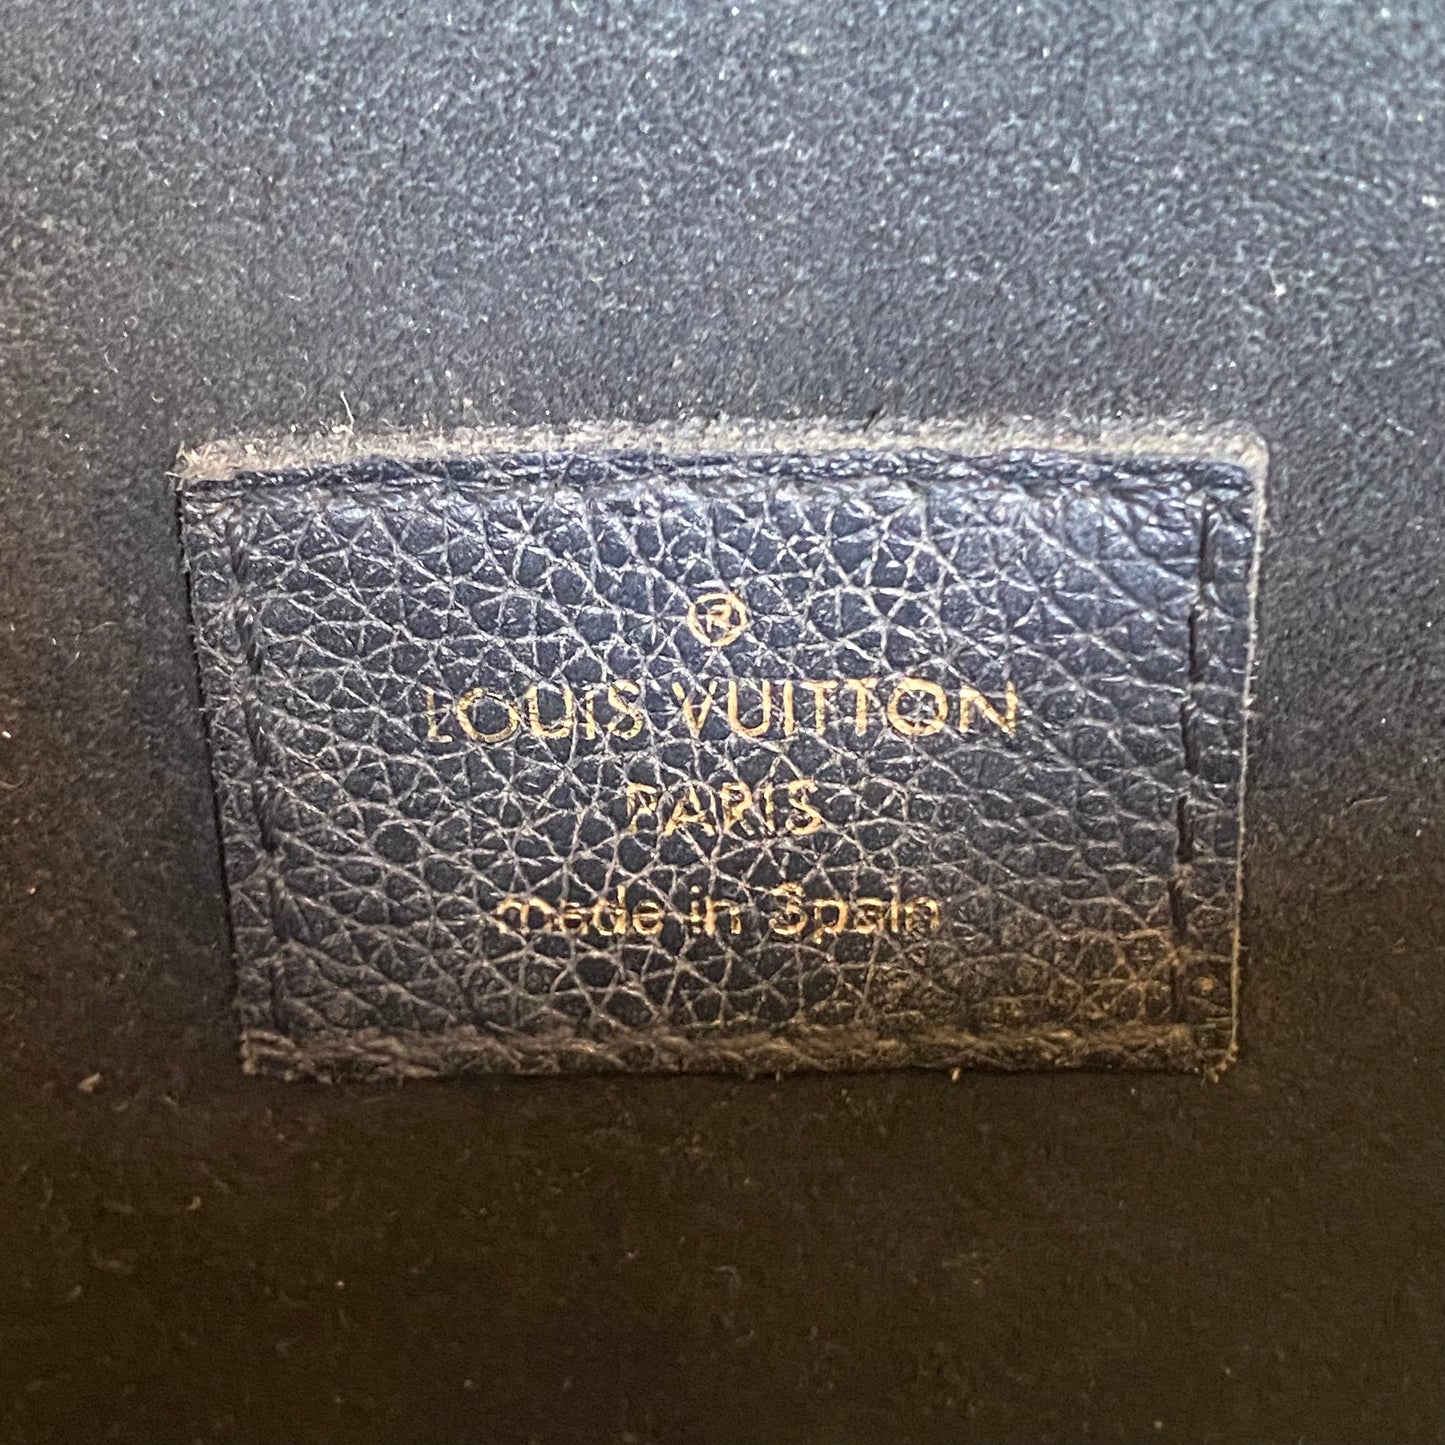 Louis Vuitton Victoire Vavin Shoulder Bag